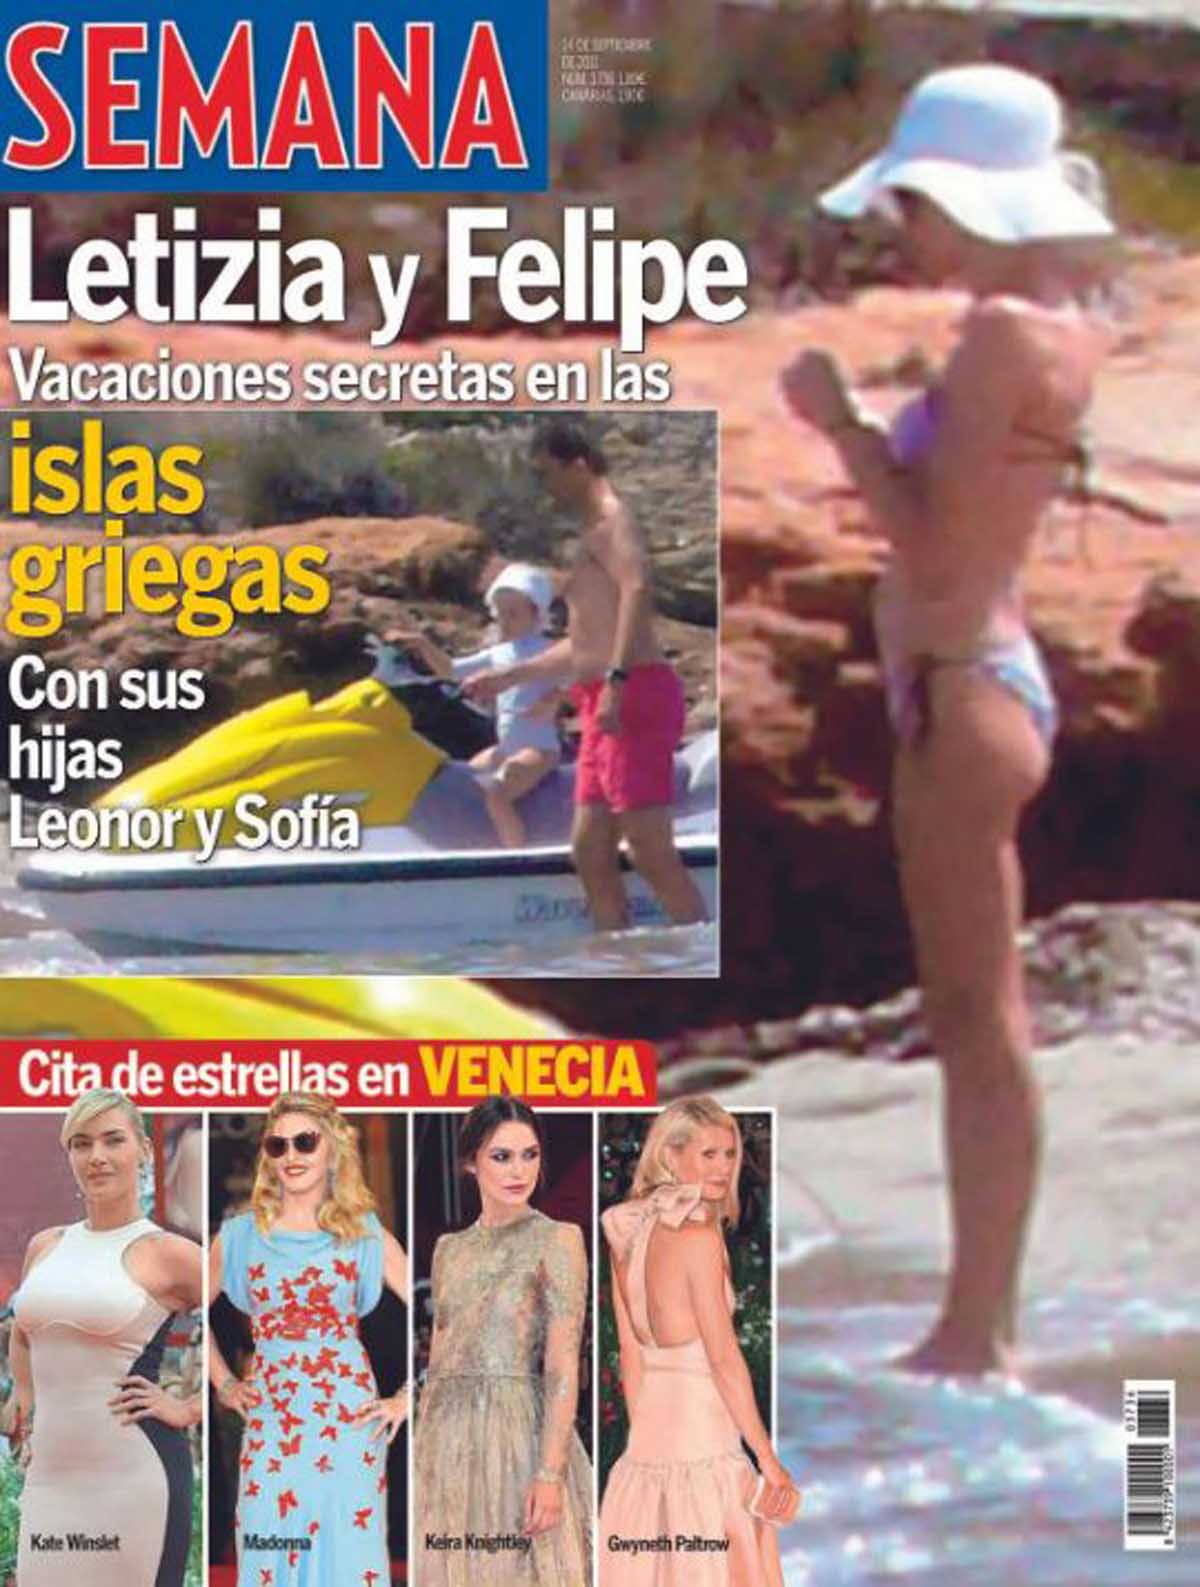 Sonsoles Ónega se moja y opina sobre la foto de Letizia en bikini